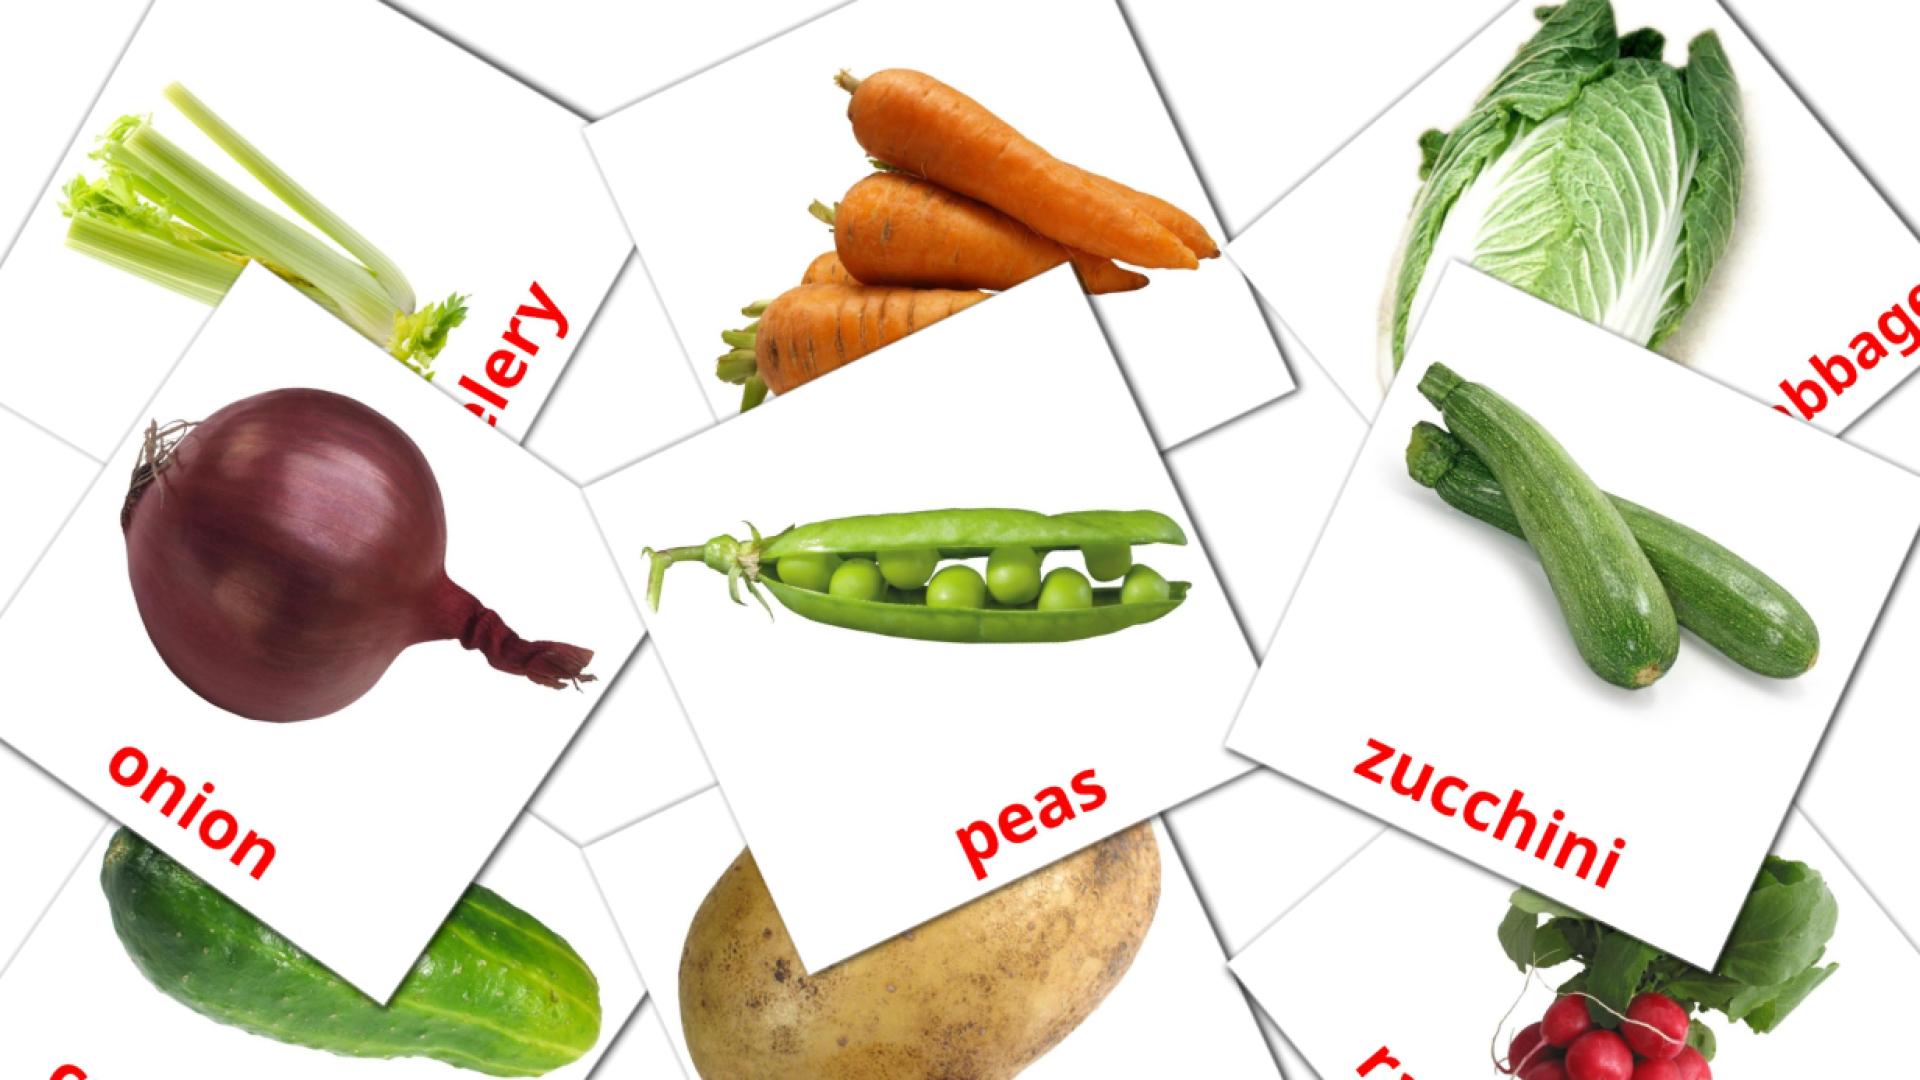 Овощи - английский словарь картинок